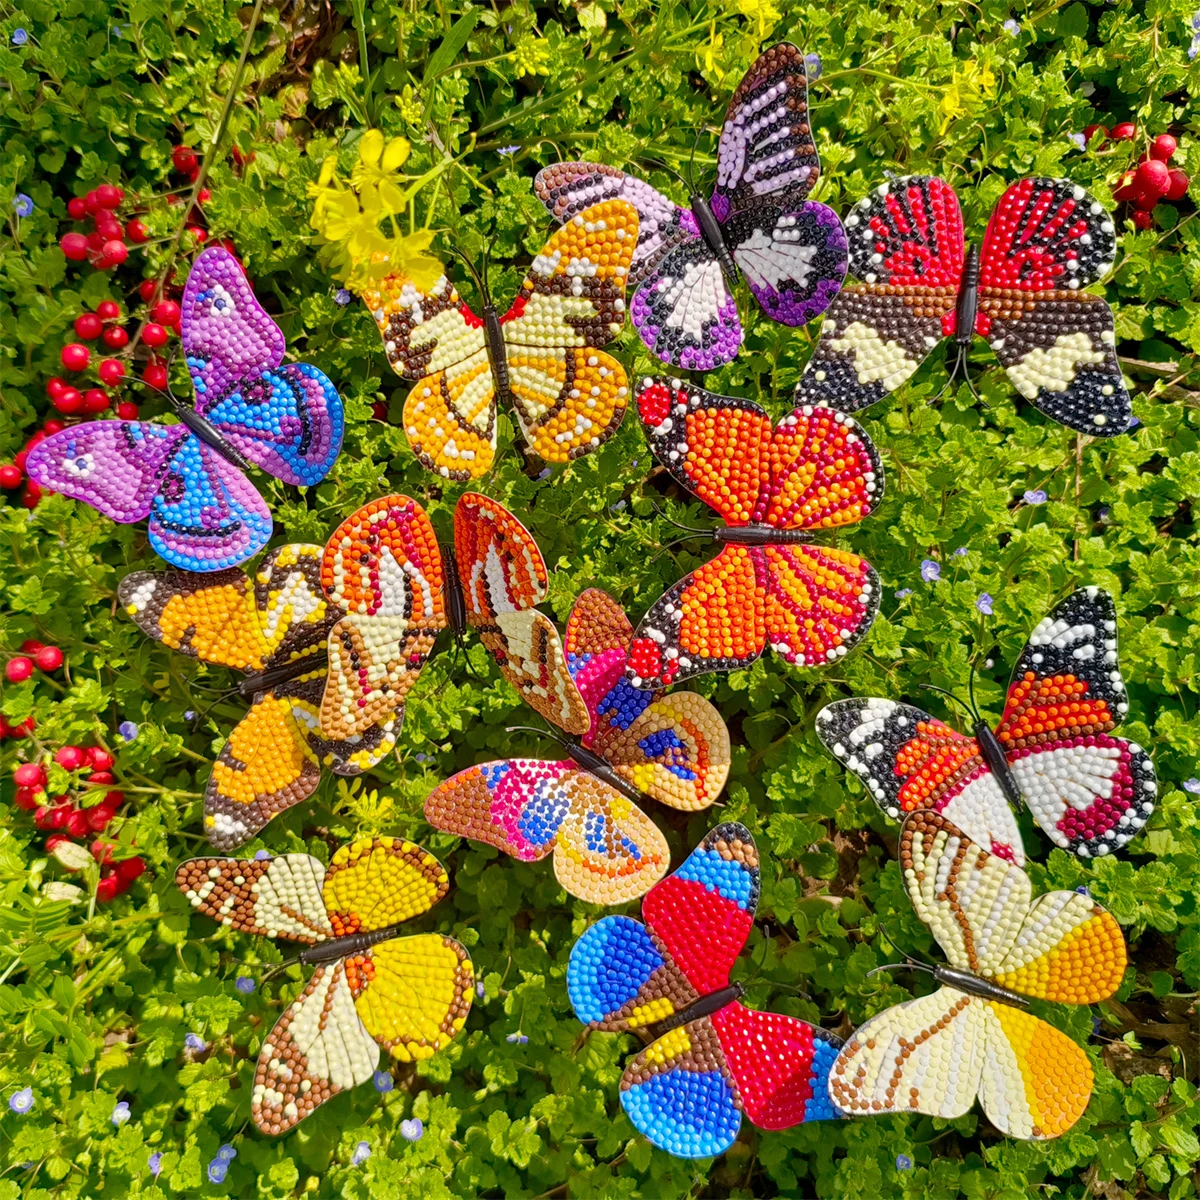 

Ювелирные украшения в виде бабочки с алмазной росписью, Алмазная мозаика в виде травы для сада, драгоценности, алмазные искусственные драгоценности, 12 штук